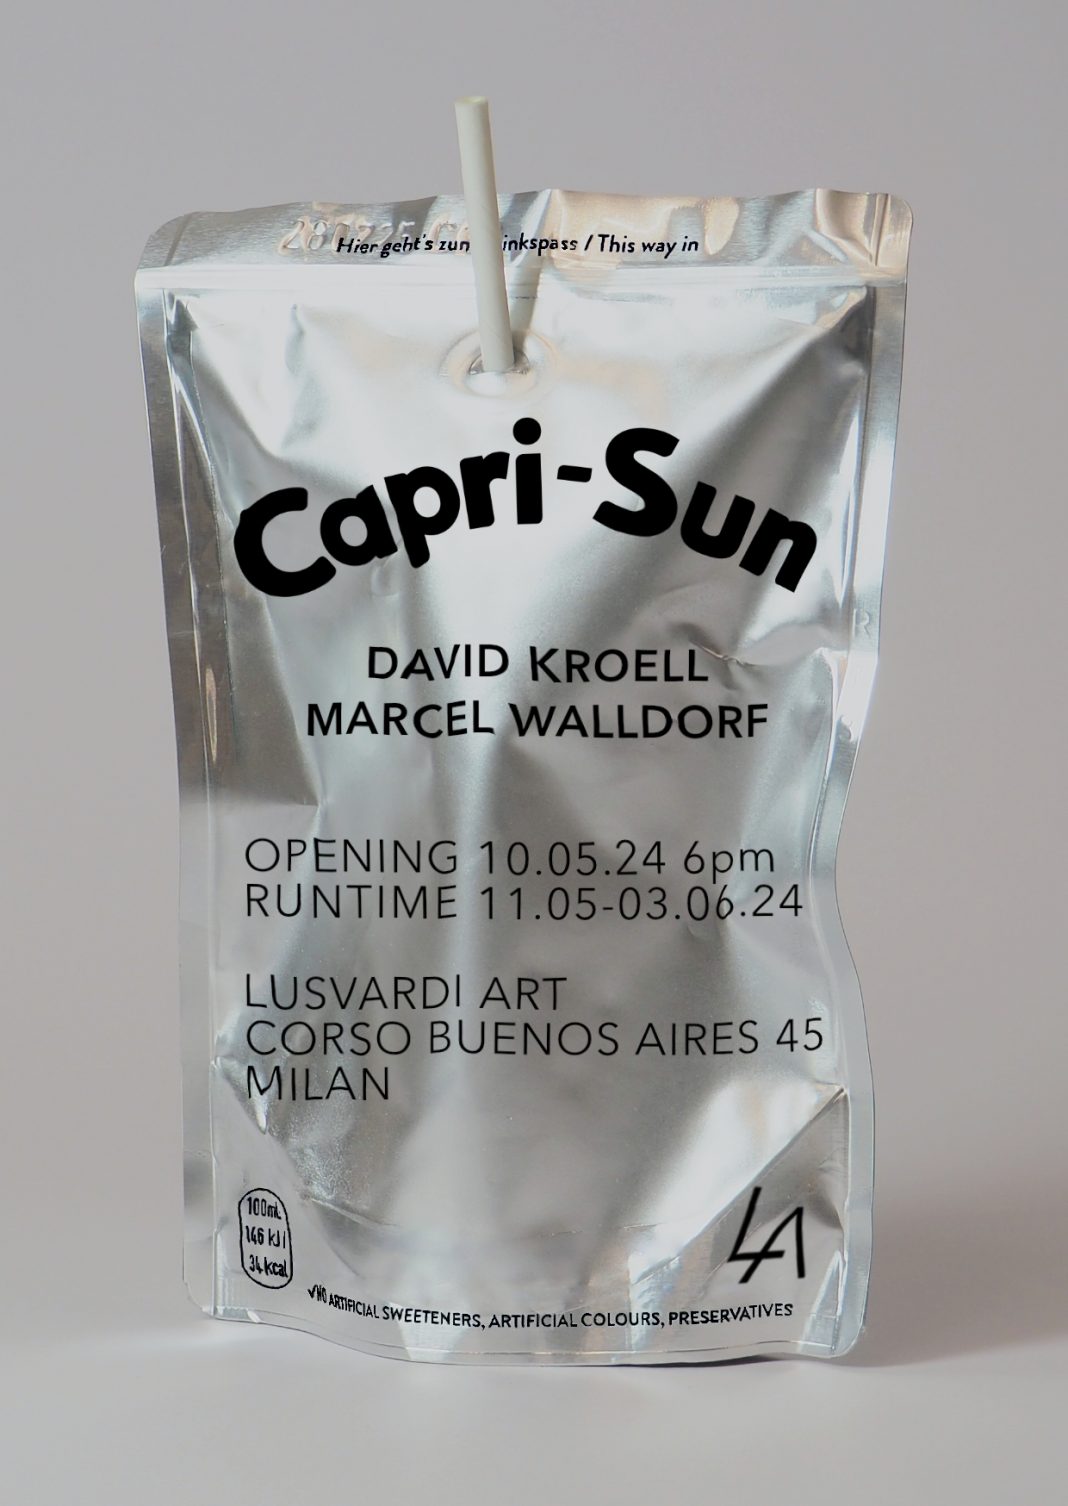 Capri Sunhttps://www.exibart.com/repository/media/formidable/11/img/932/CAPRI-SUN-LUSVARDI-ART-2-1068x1506.jpg